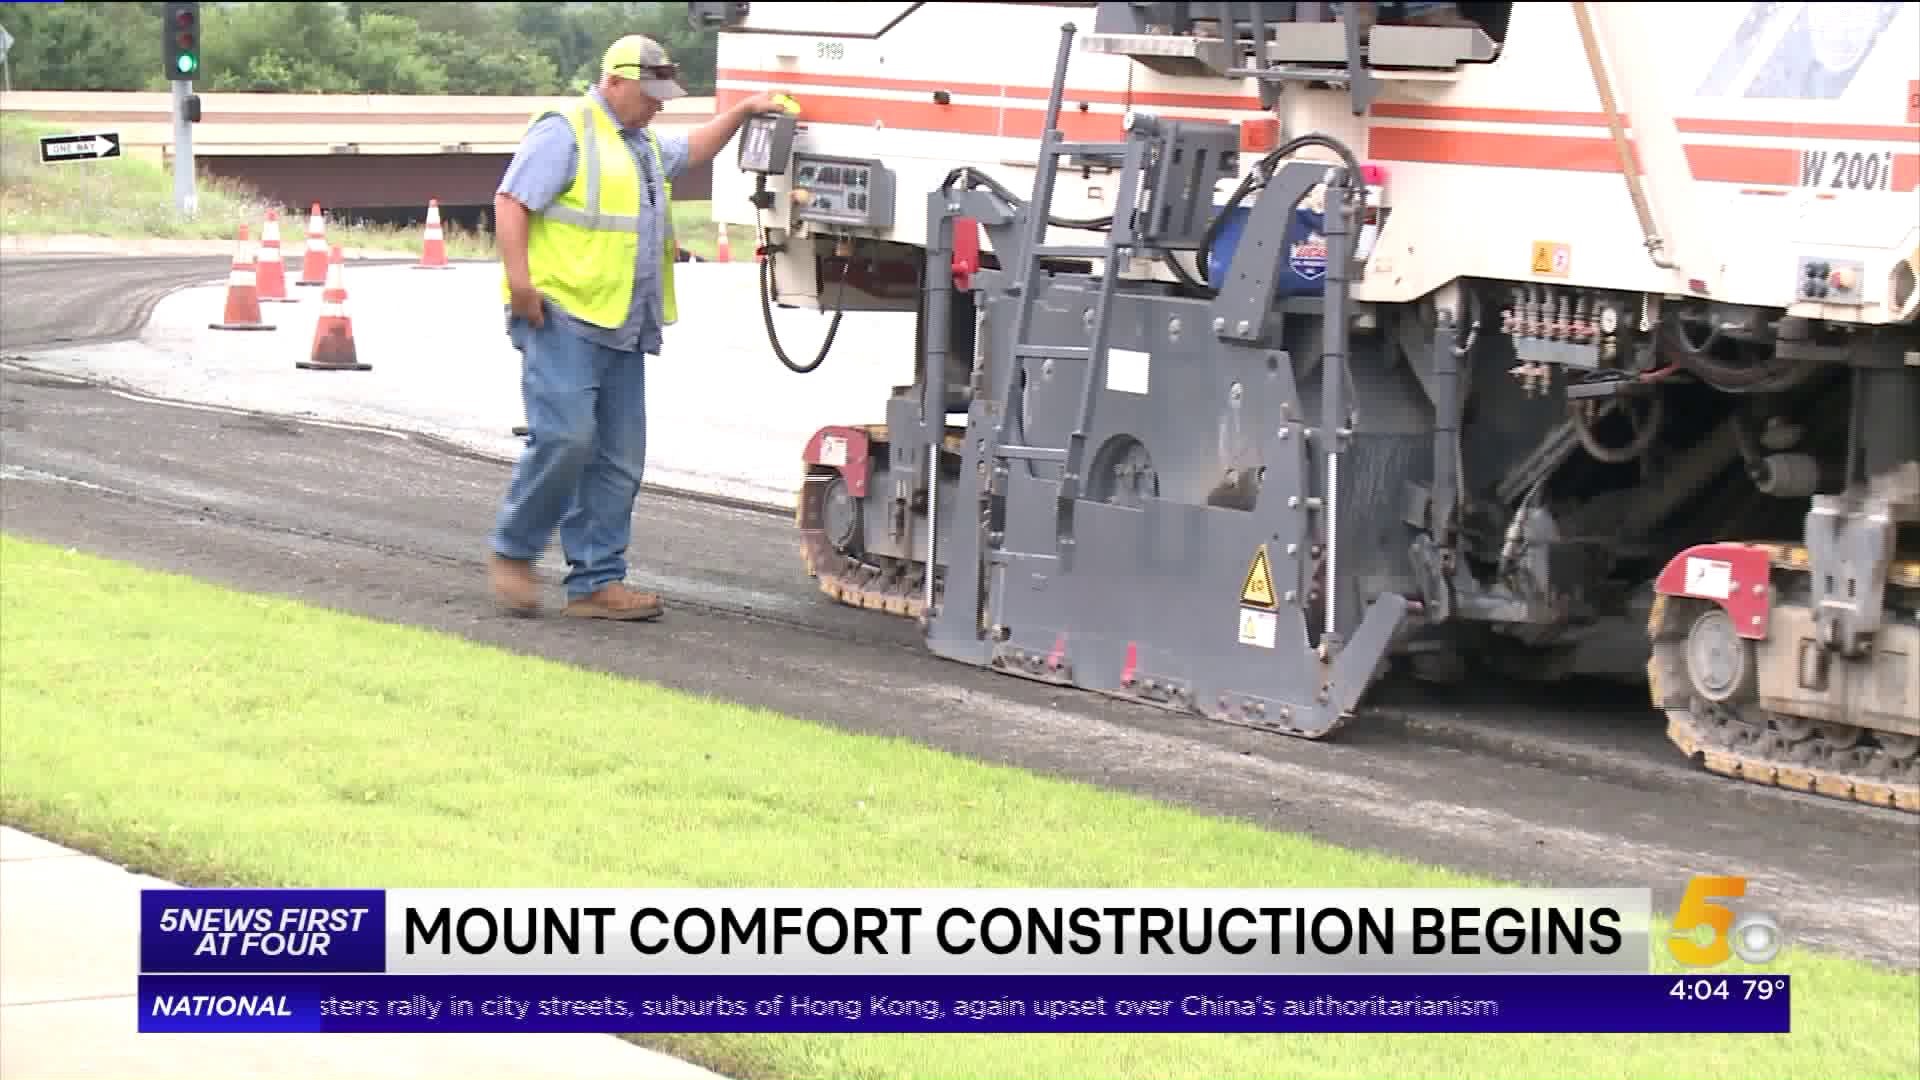 Mount Comfort Construction Begins